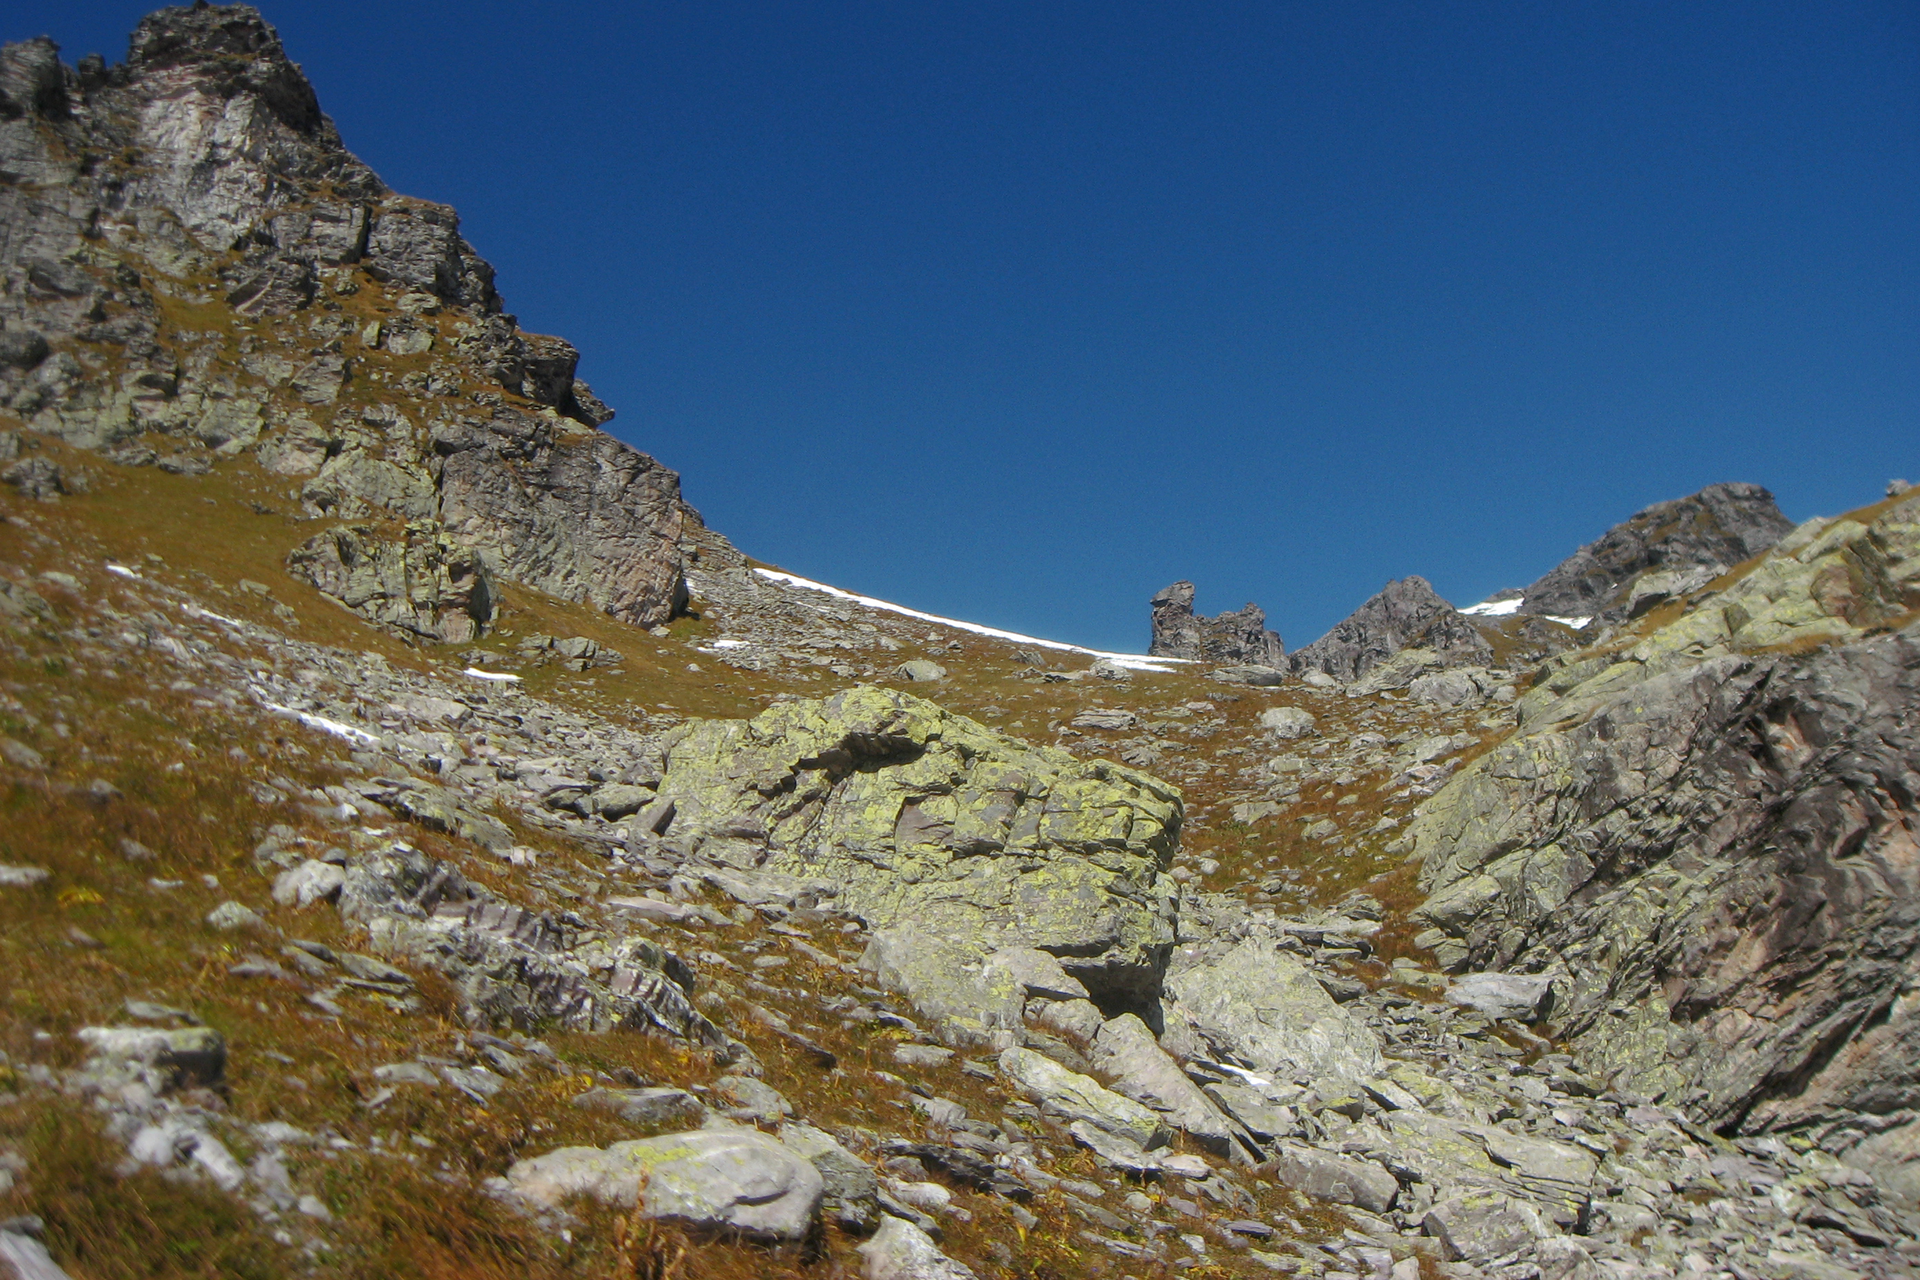 Fotografia przedstawia krajobraz skał na tle błękitnego nieba. Między szarymi skałami rośnie zrudziała trawa. Na skałach rosną żółte i szare porosty skorupiaste.